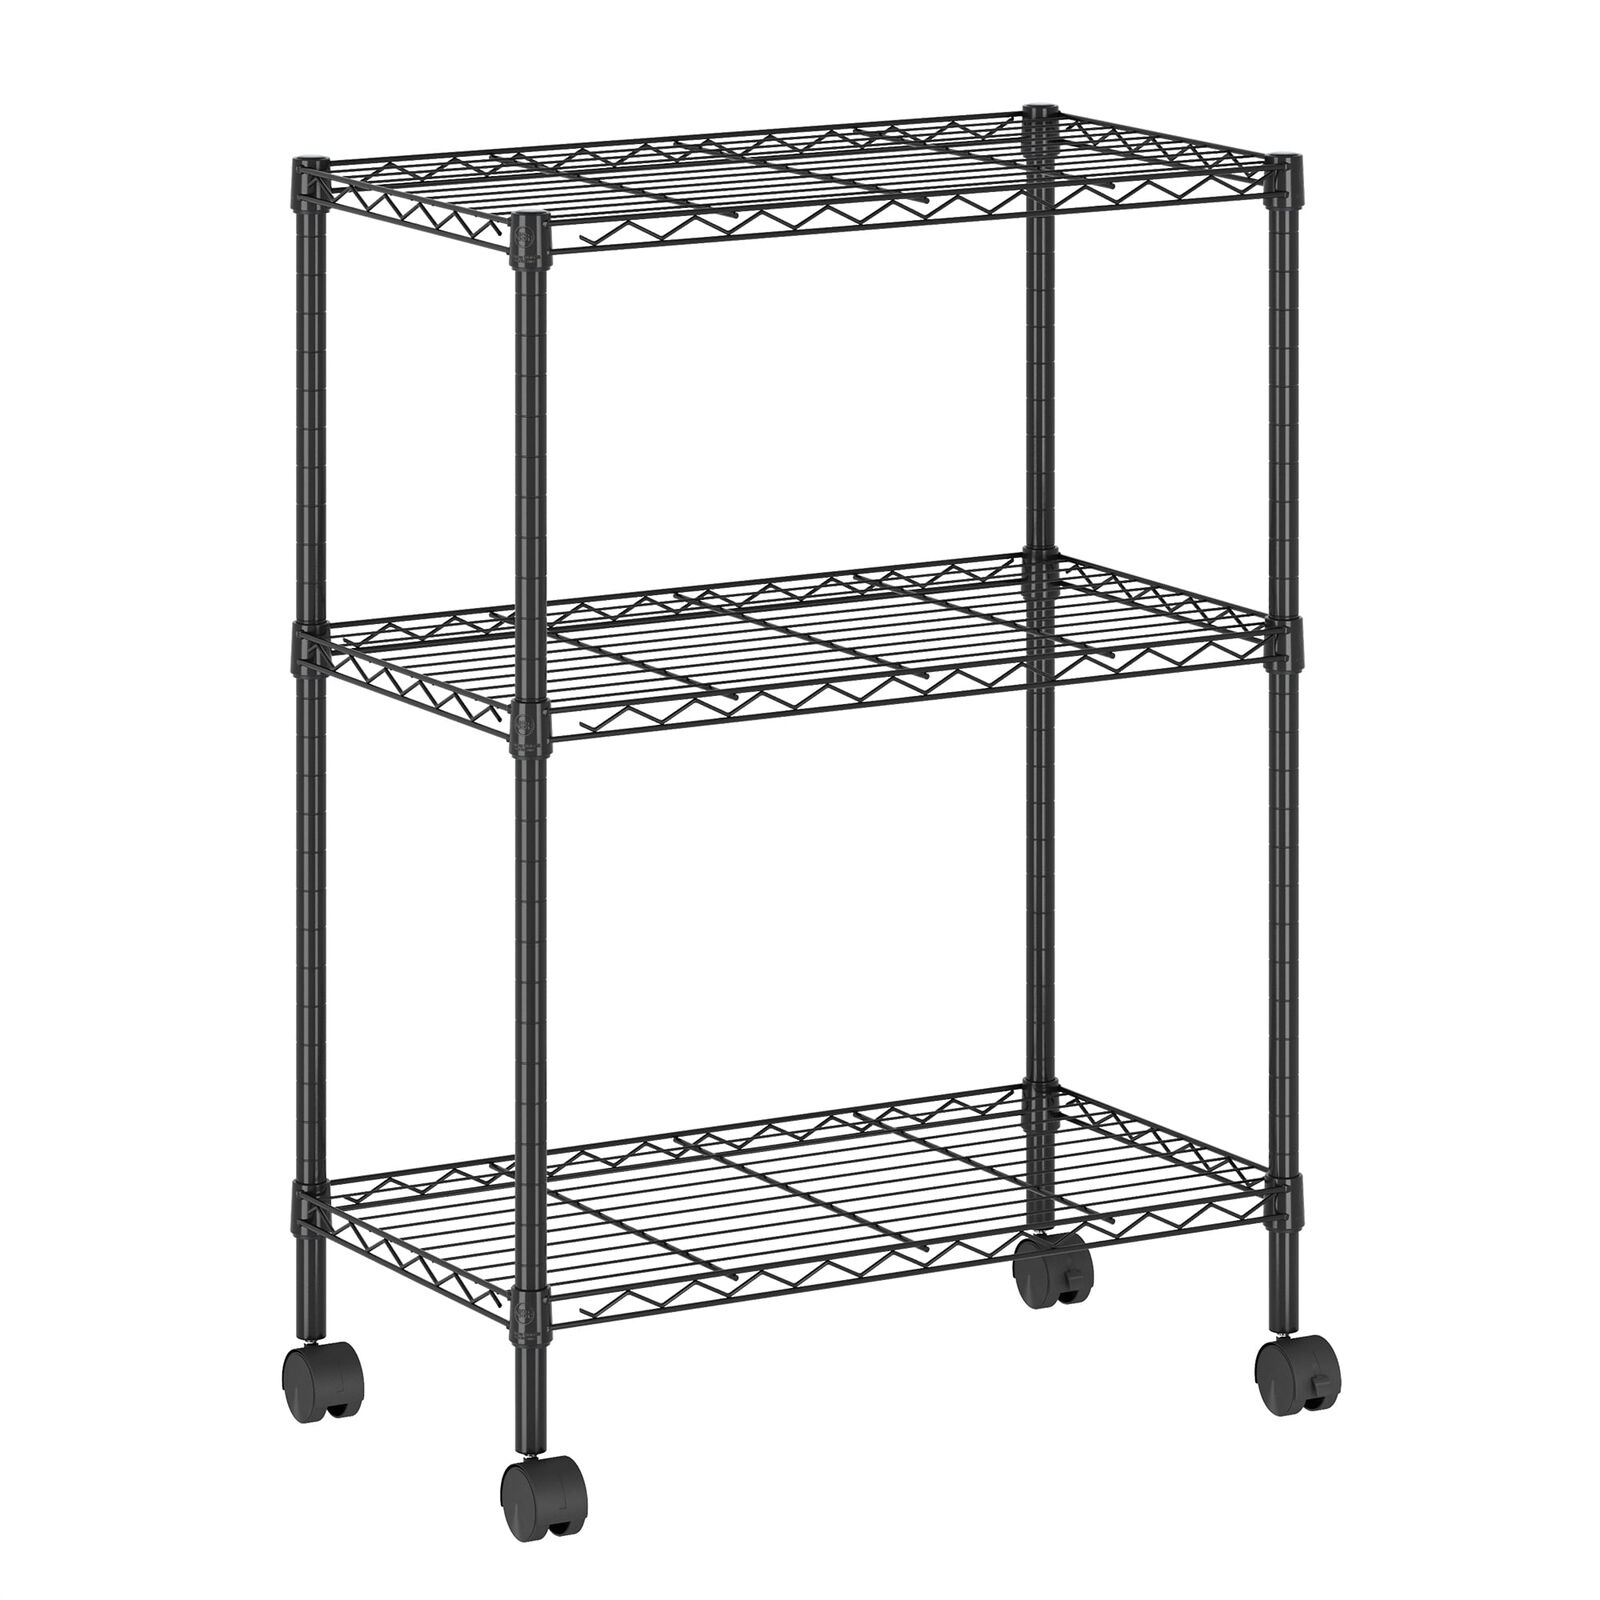 3-Tier Metal Storage Shelf Rack Cart with Casters, 23 x 13 x 30, Black